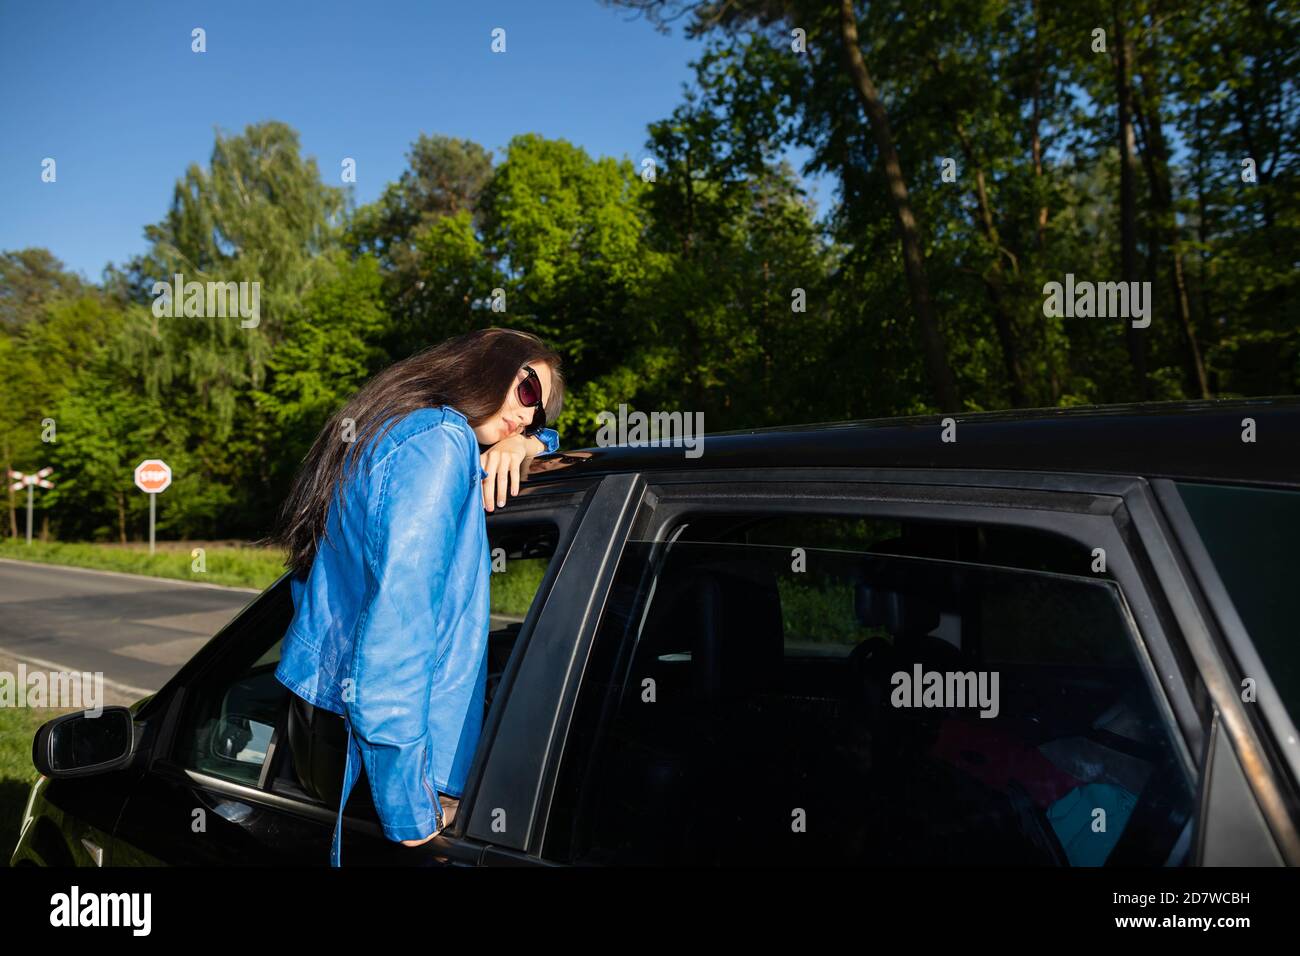 Halten Sie während der Fahrt in einem Wald Hain. Junge Teenager Mädchen im  Auto Fenster. Sommerurlaub Abenteuer Stockfotografie - Alamy